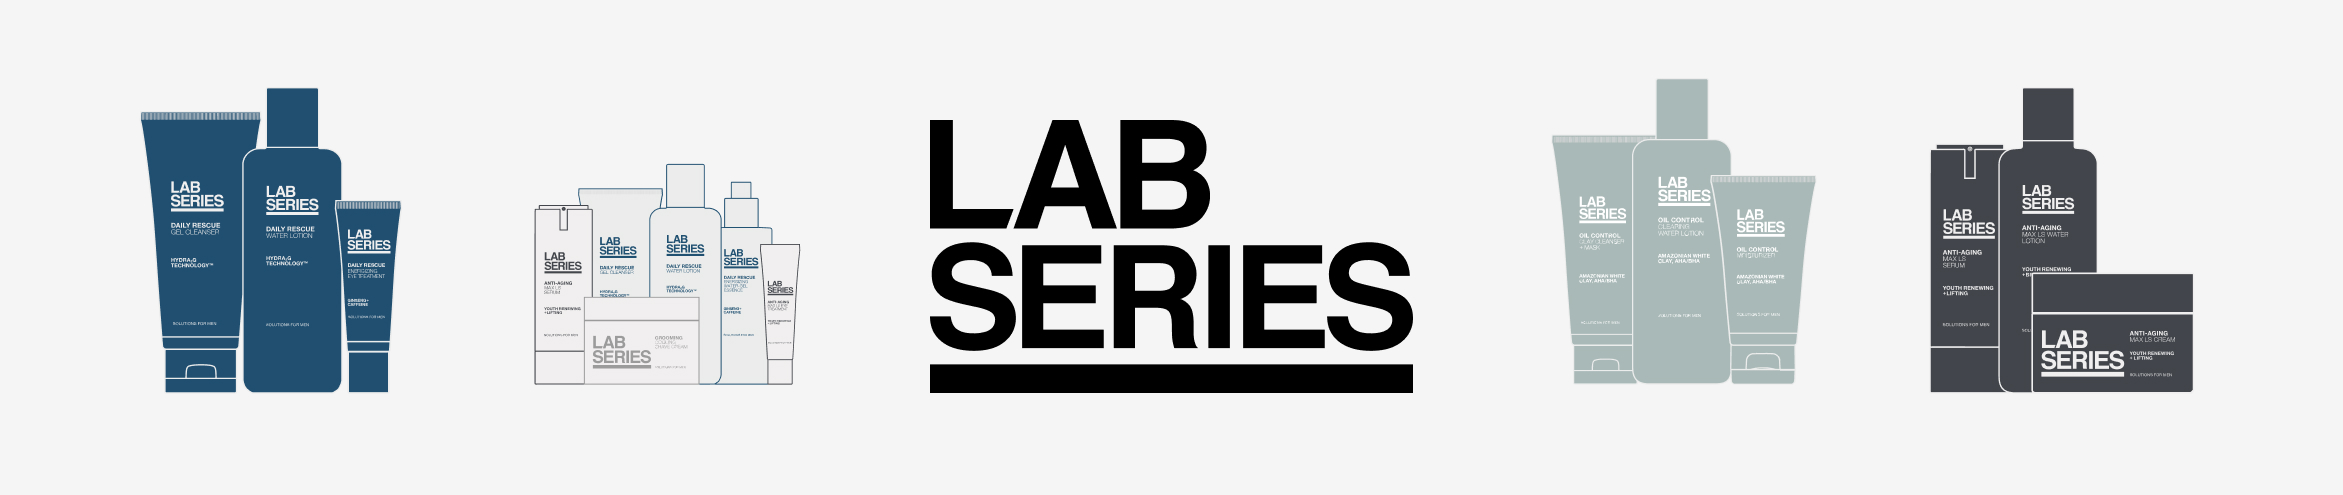 Lab Series - Moisturizer